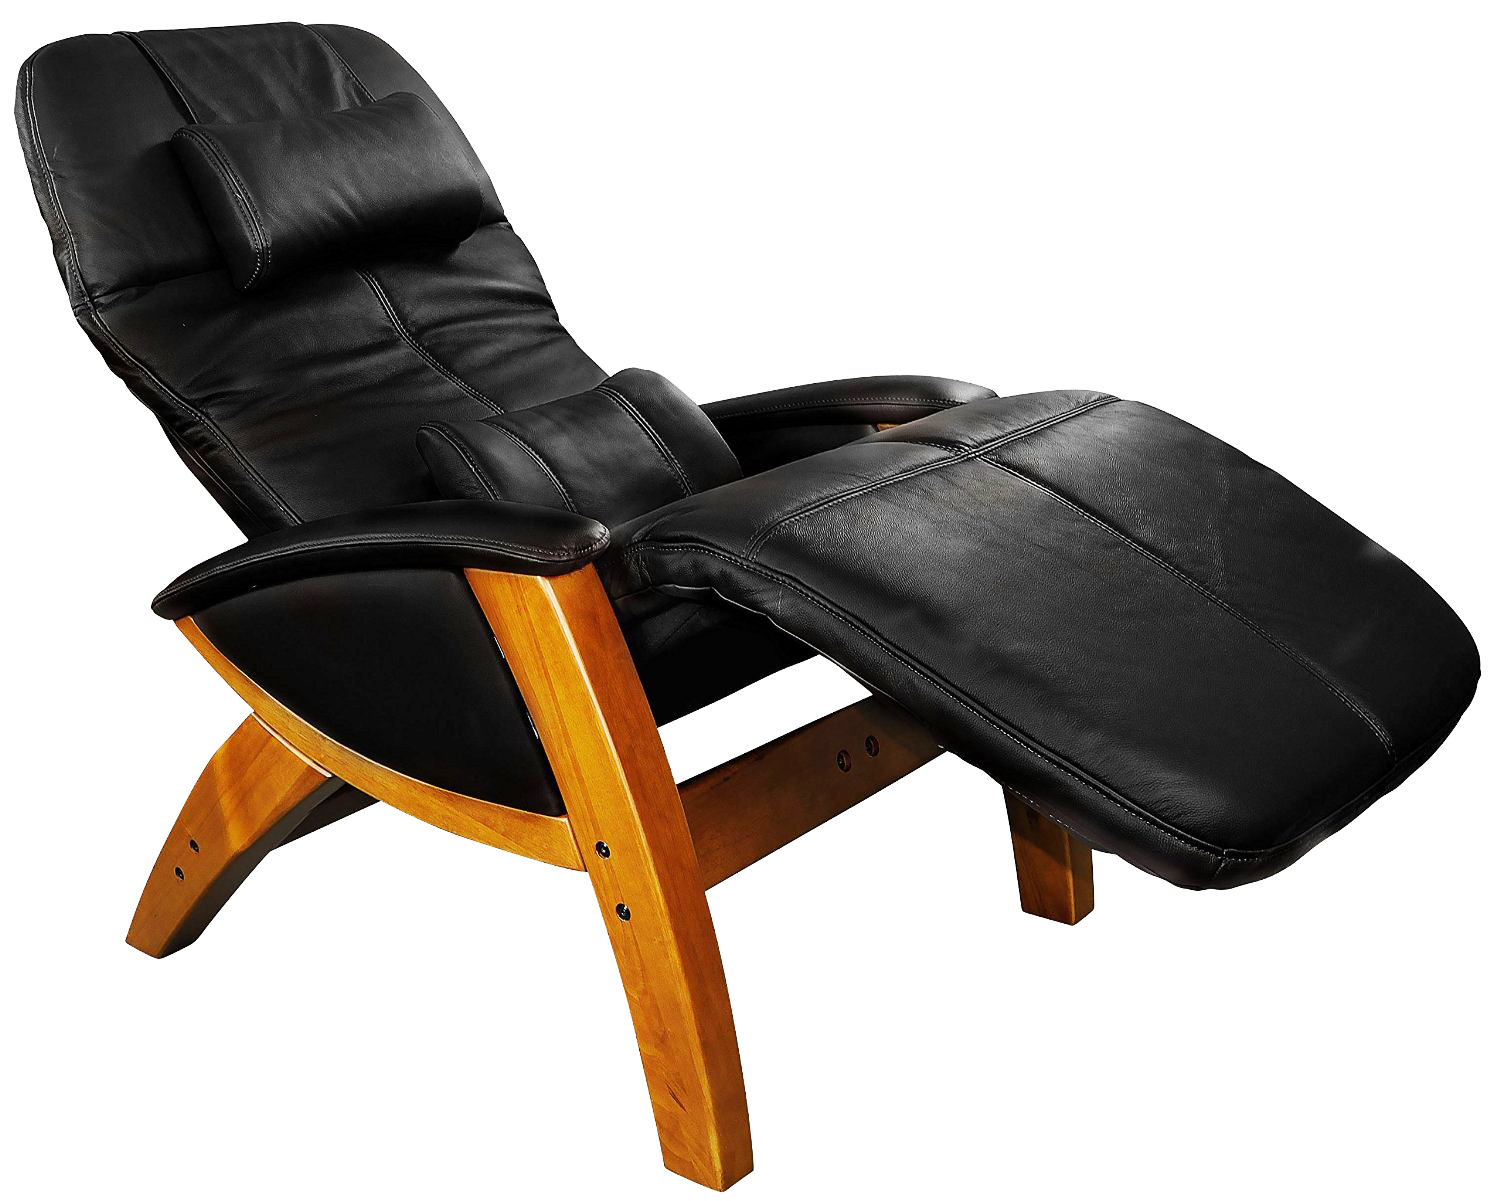 Svago SV 410 SV 415 Benessere Zero Gravity Leather Recliner Chair